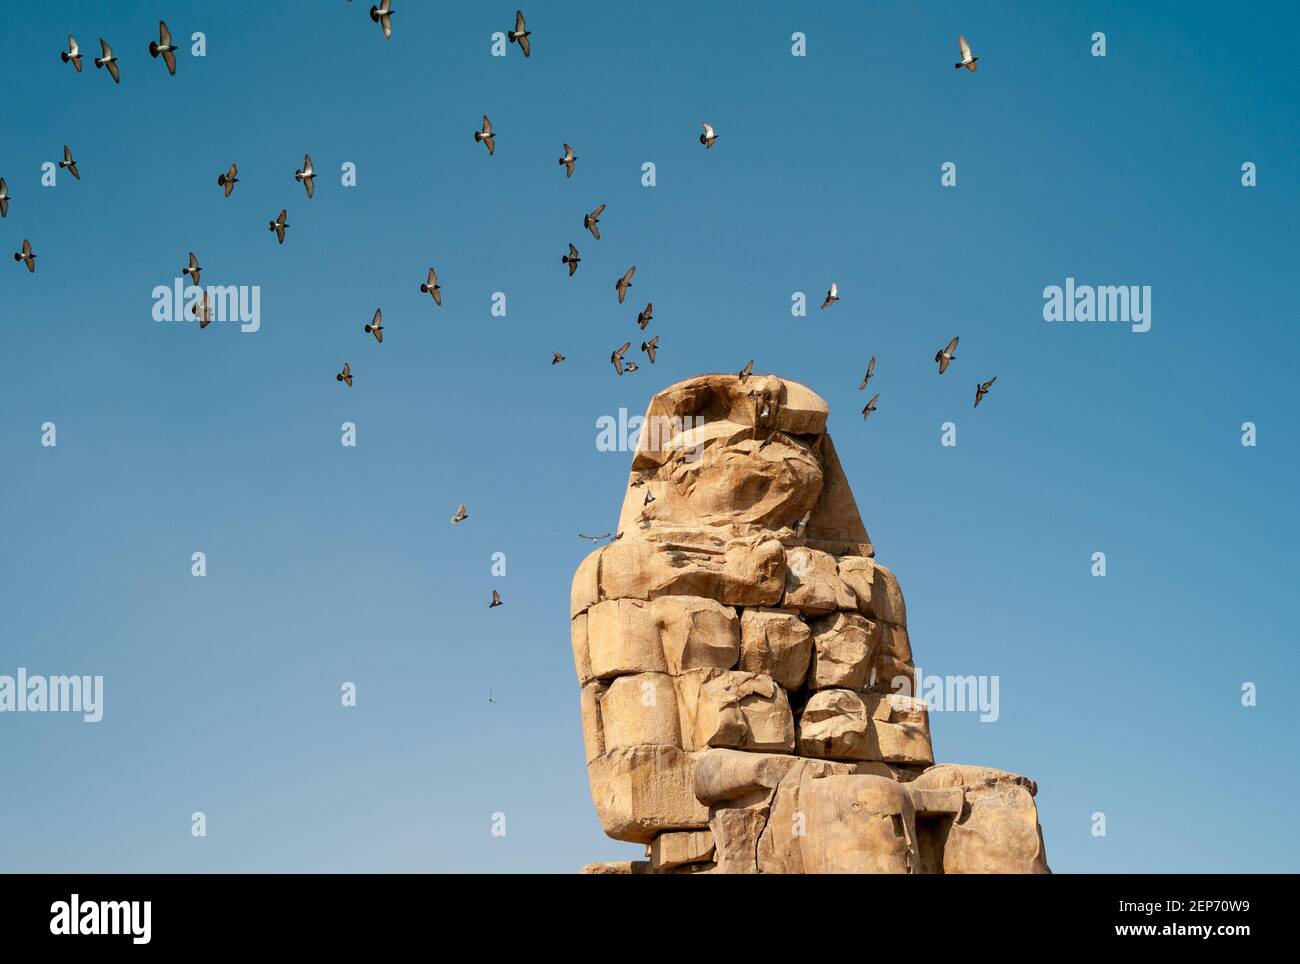 Le colosse de Memnon, le colosse du Nord, est une statue en pierre massive du Pharaon Amenhotep III, avec Birds Flying Banque D'Images